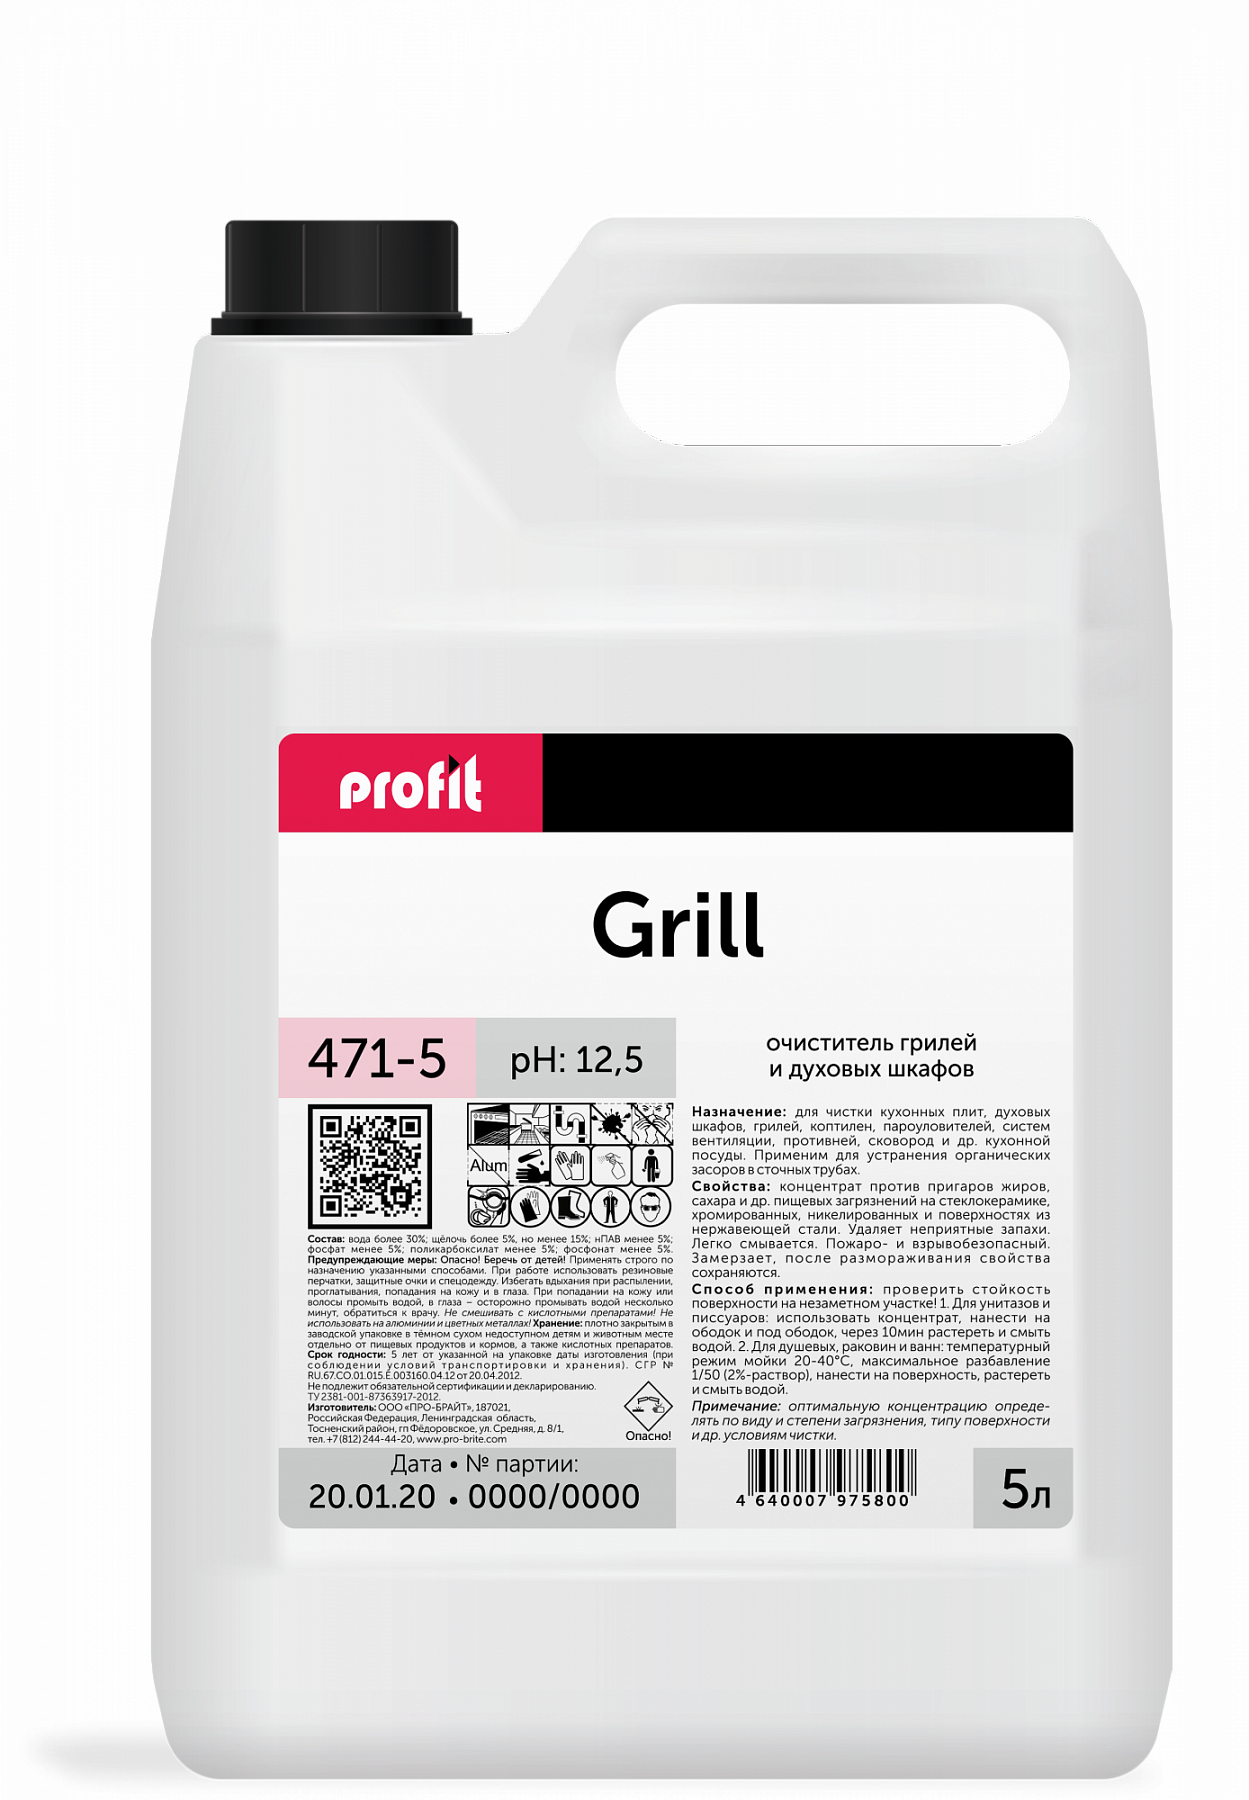 Чистящее средство для плит, гридей, духовок Pro-Brite PROFIT GRILL, 5л средство для чистки грилей и духовых шкафов pro brite grill 0 5л